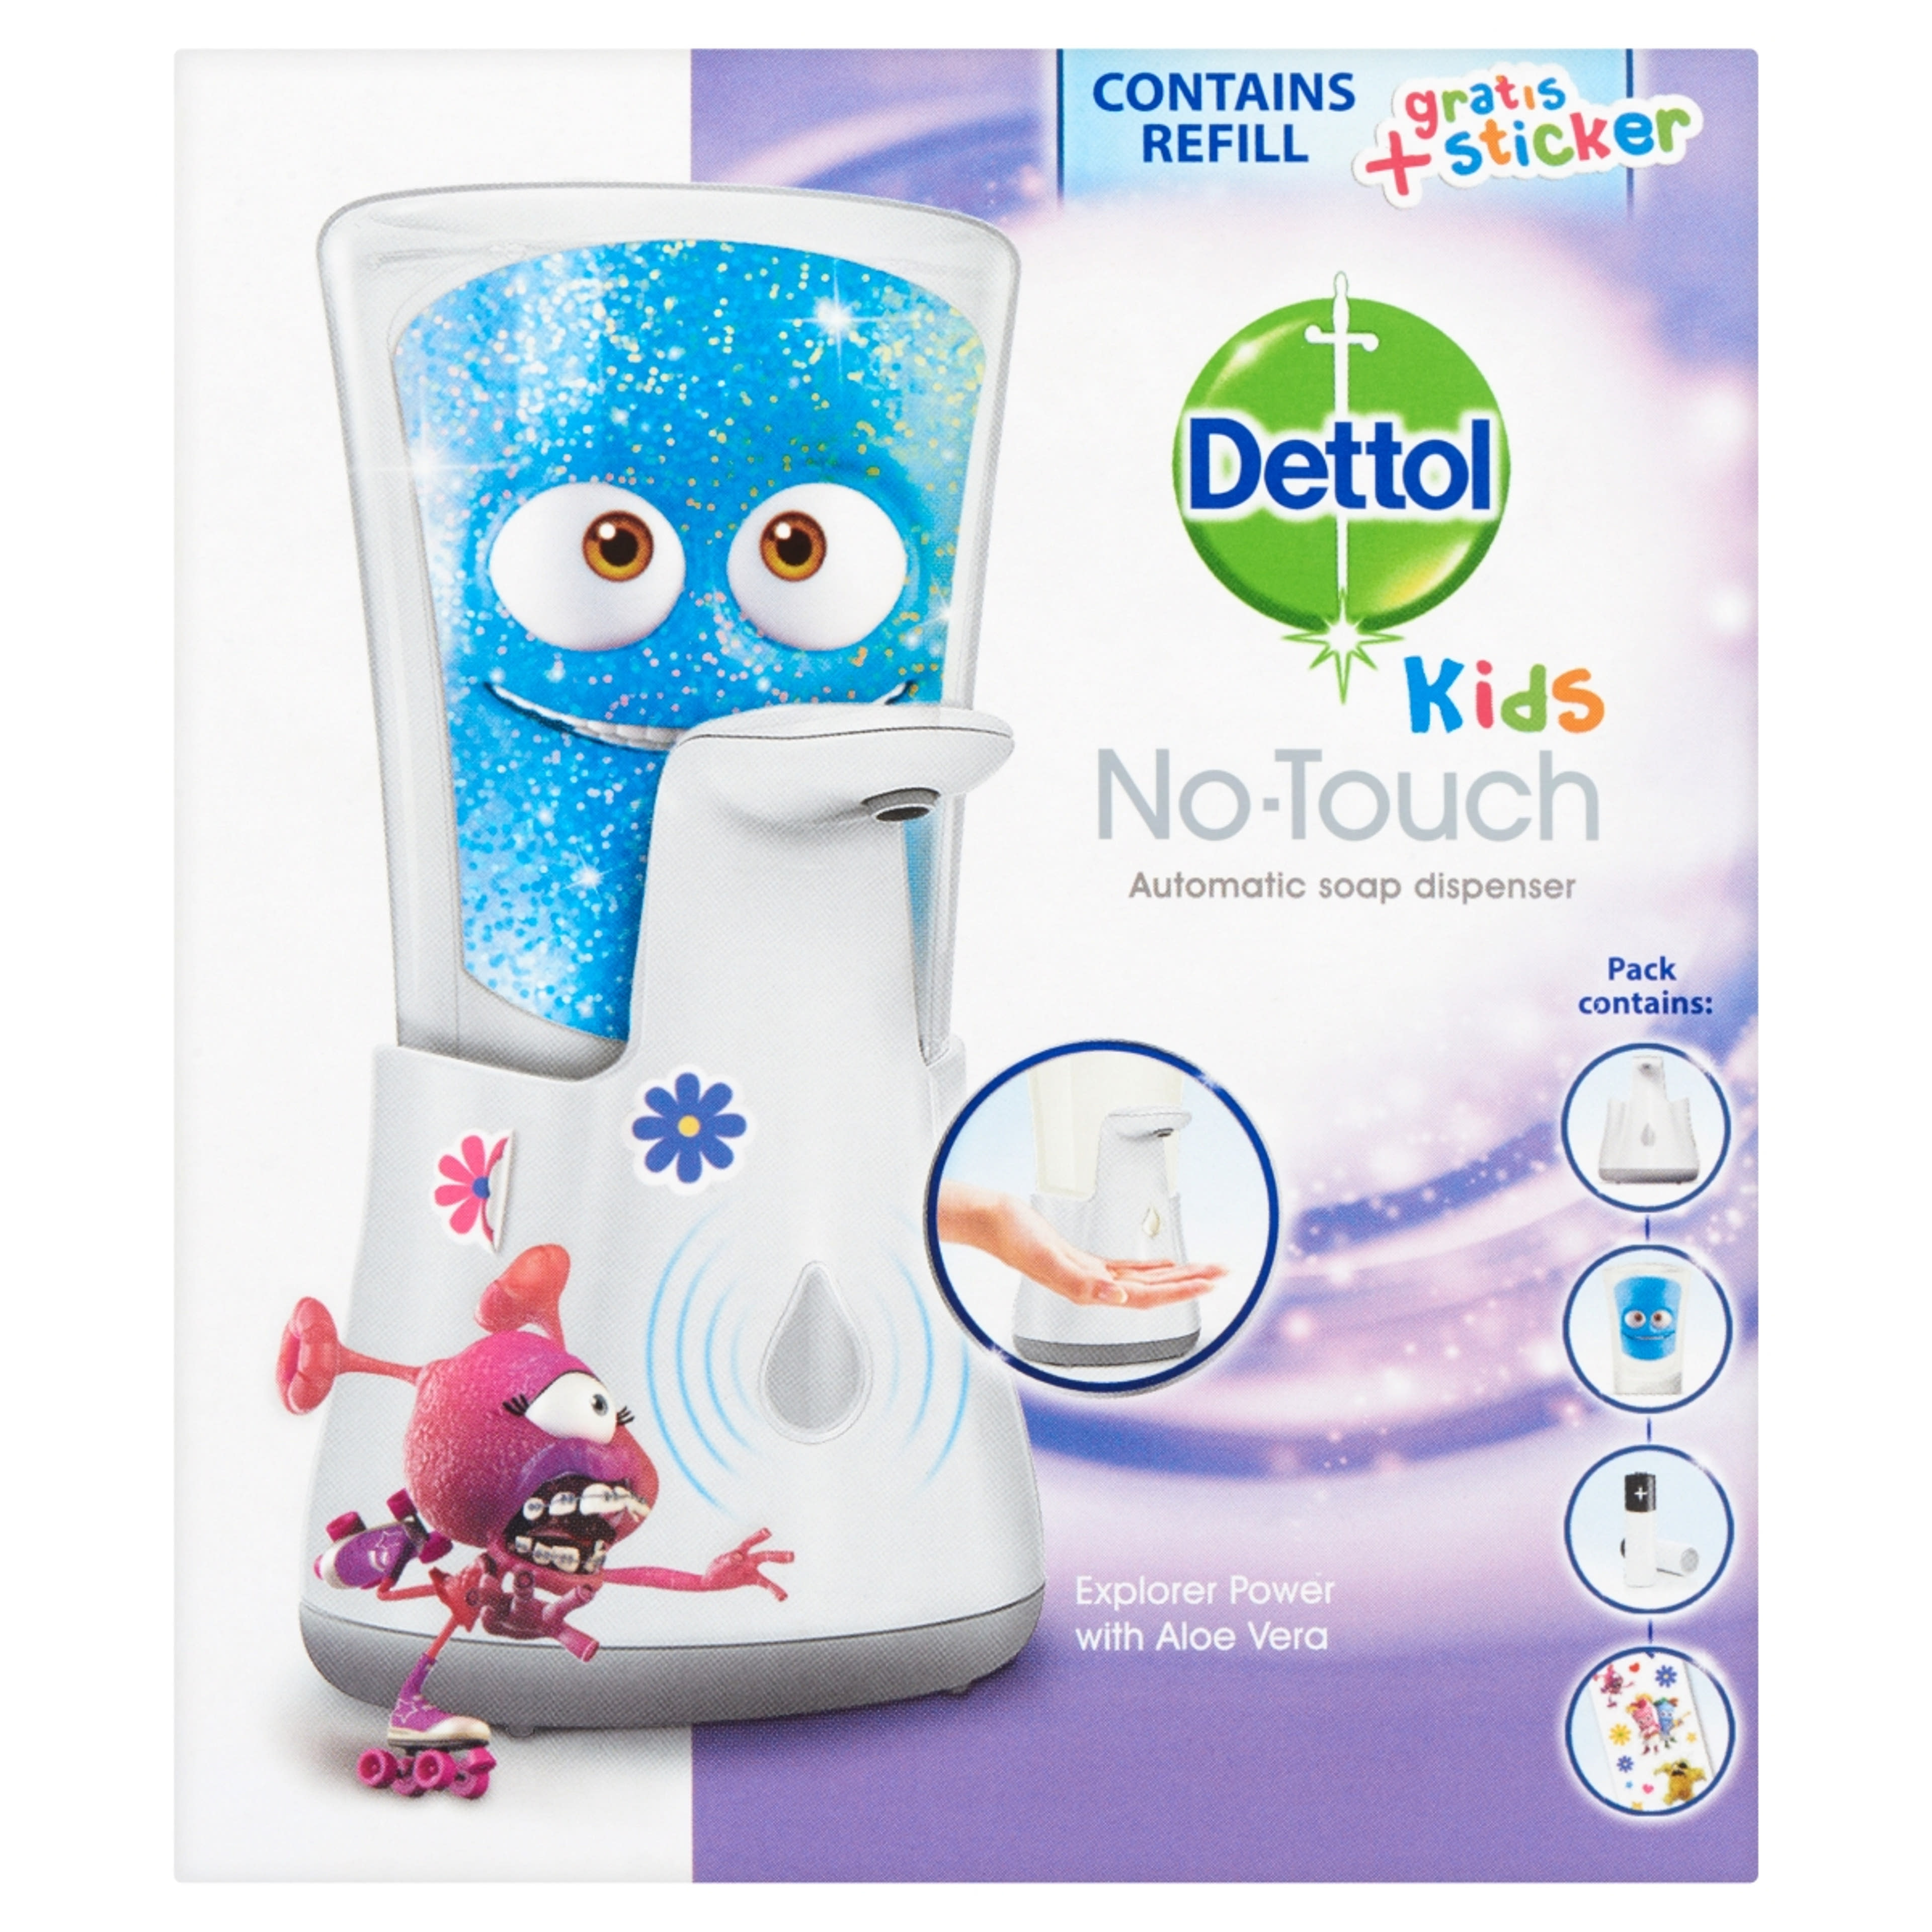 Dettol Kids érintés nélküli kézmosó készülék + utántöltő Aloe Vera - 1 db